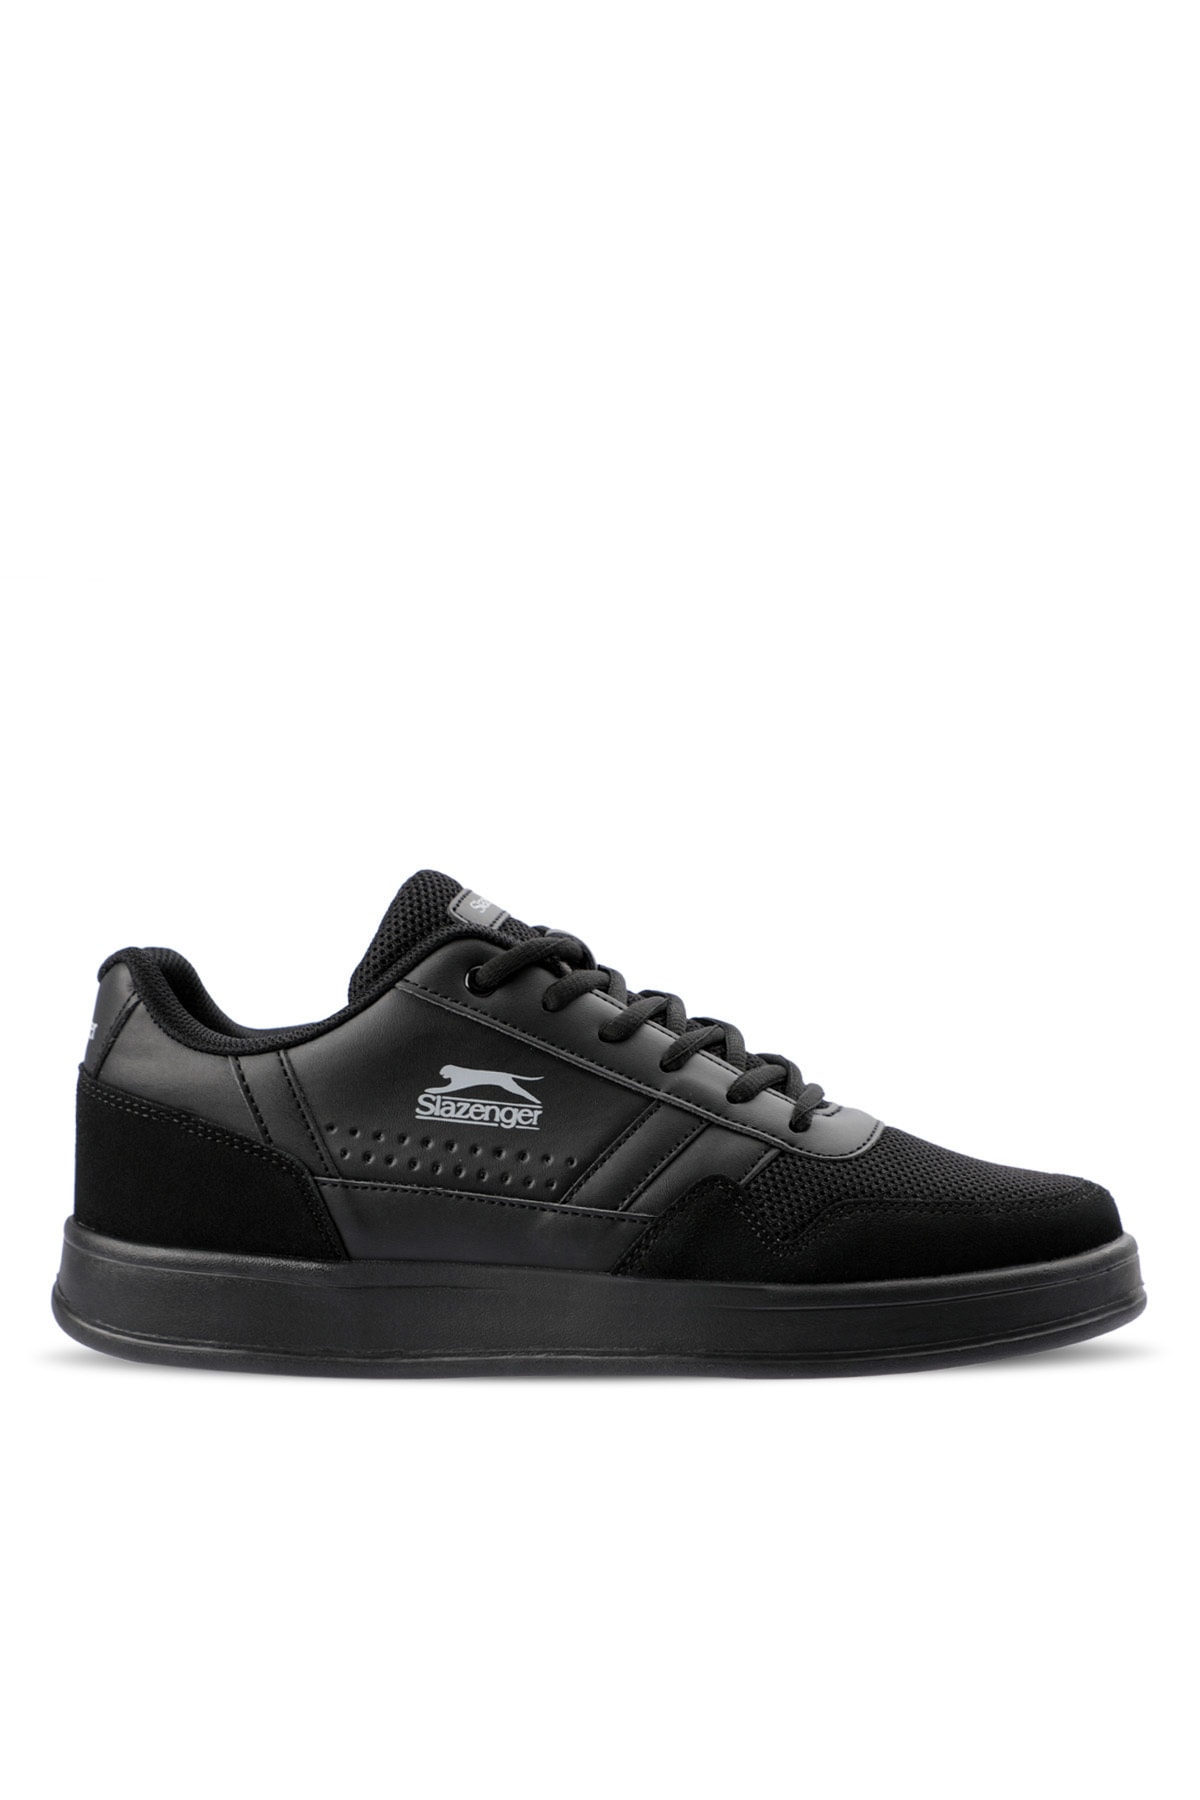 Slazenger Body Sneaker Men's Shoes Black / Black